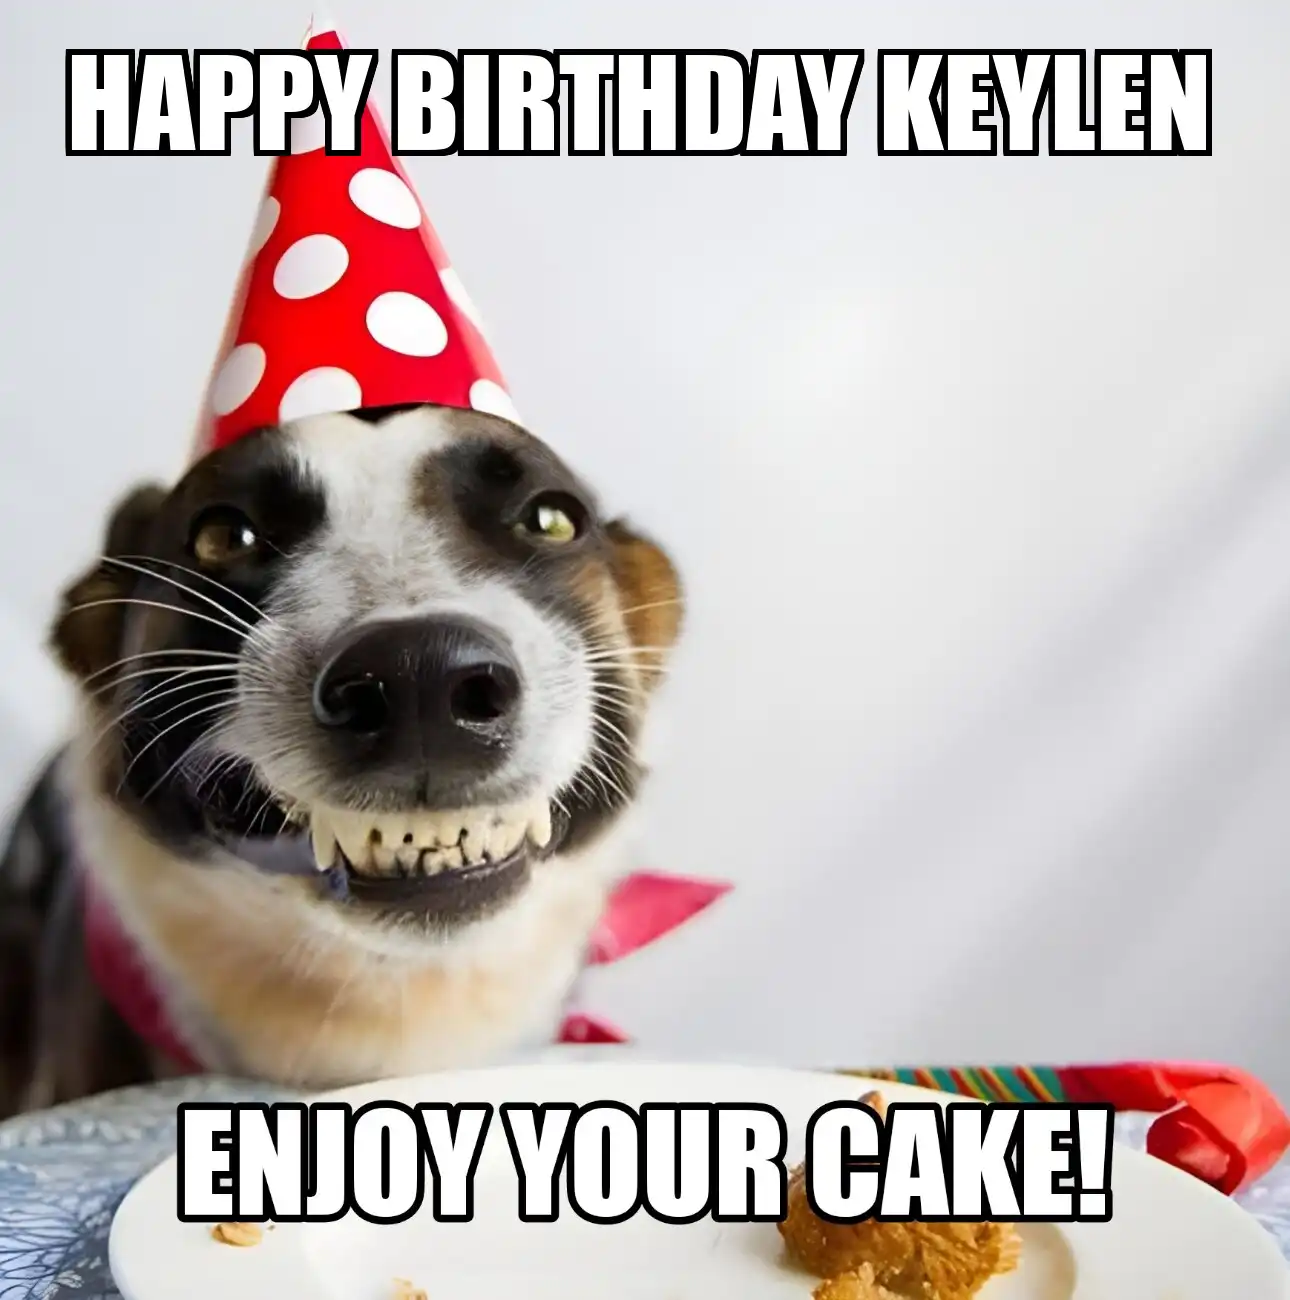 Happy Birthday Keylen Enjoy Your Cake Dog Meme